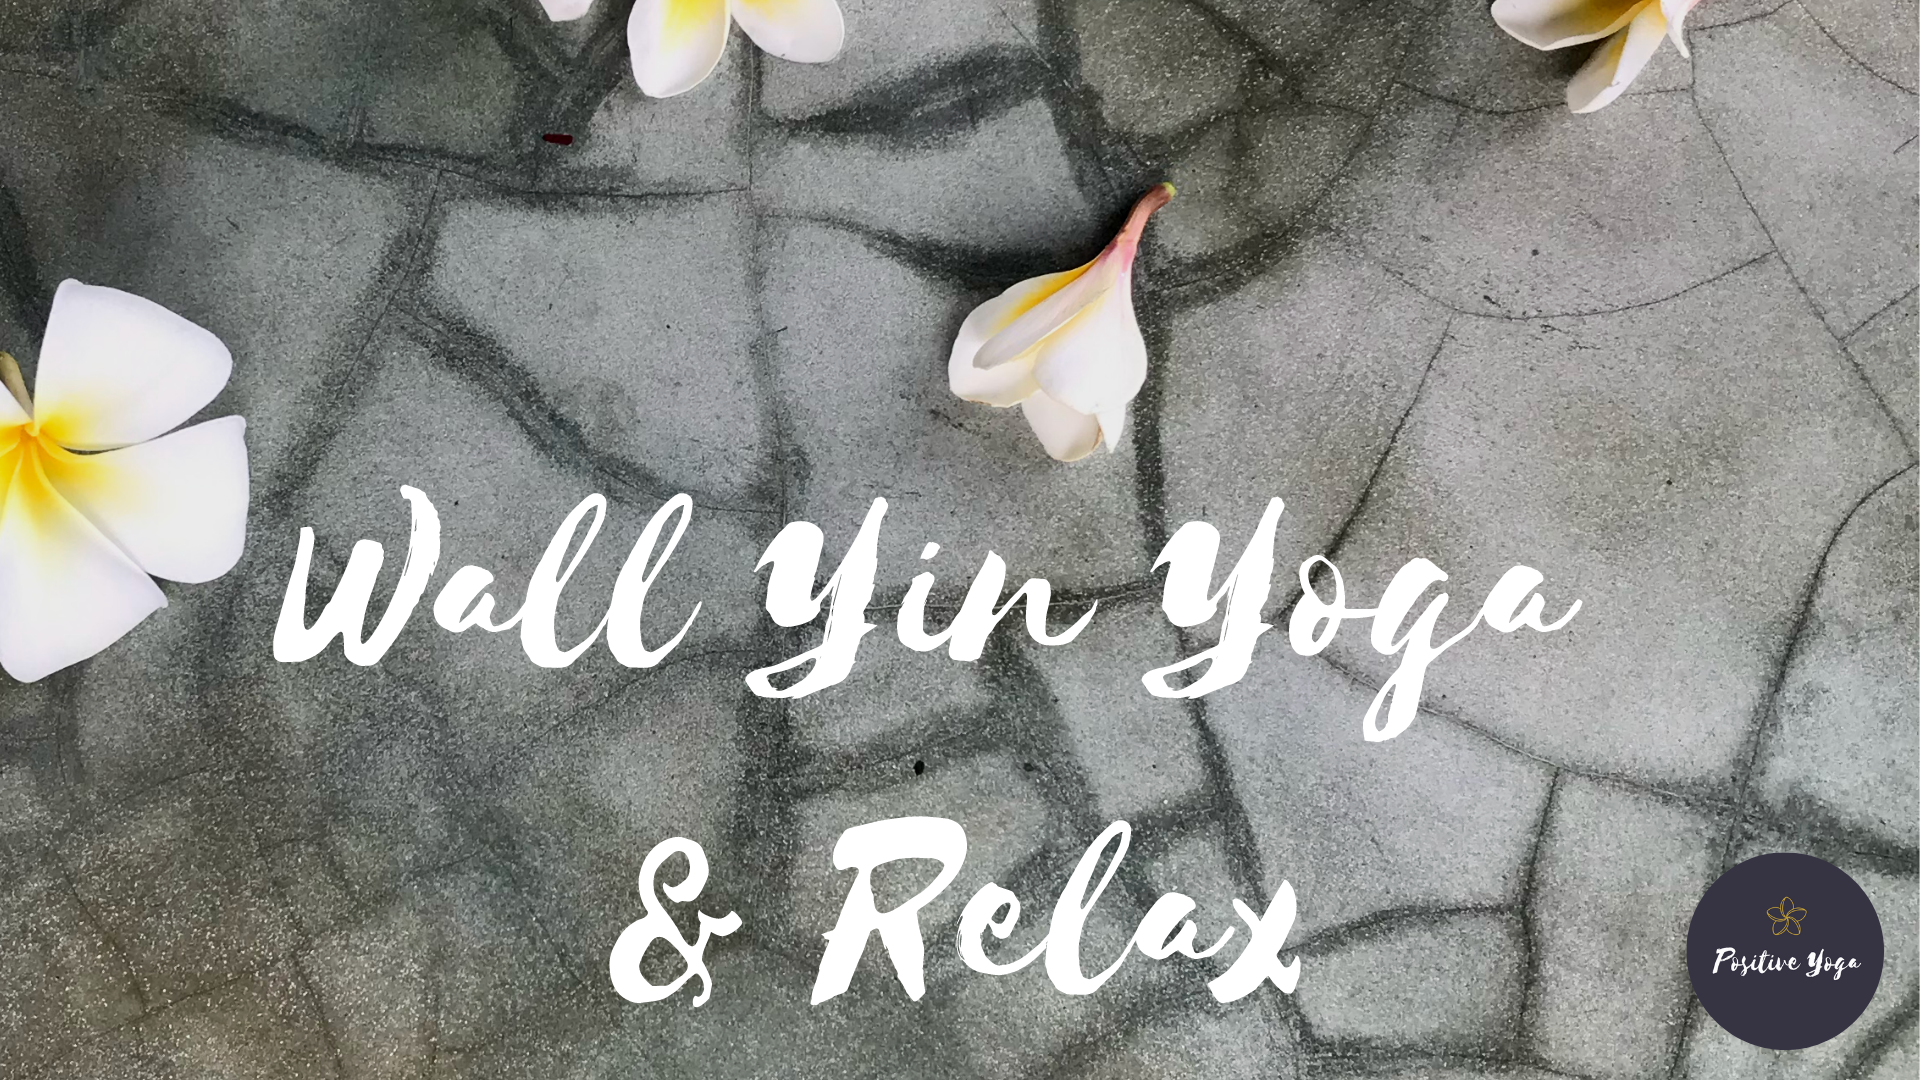 Wall Yin Yoga